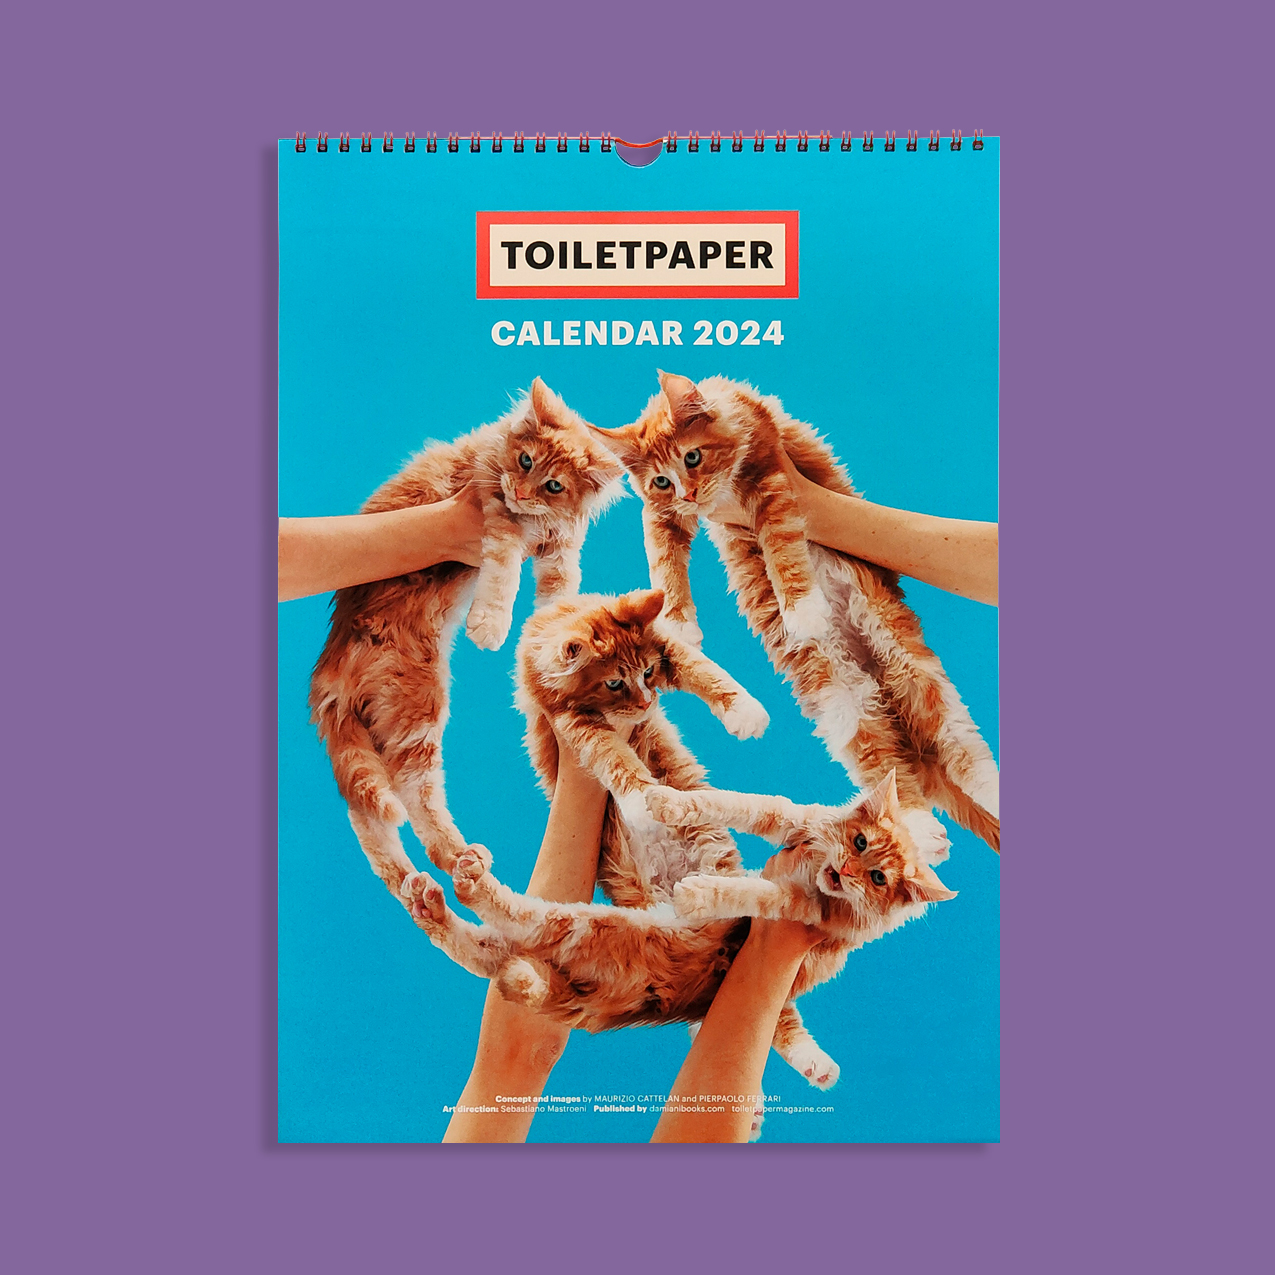 Toiletpaper Calendar 2024 Librairie sans titre